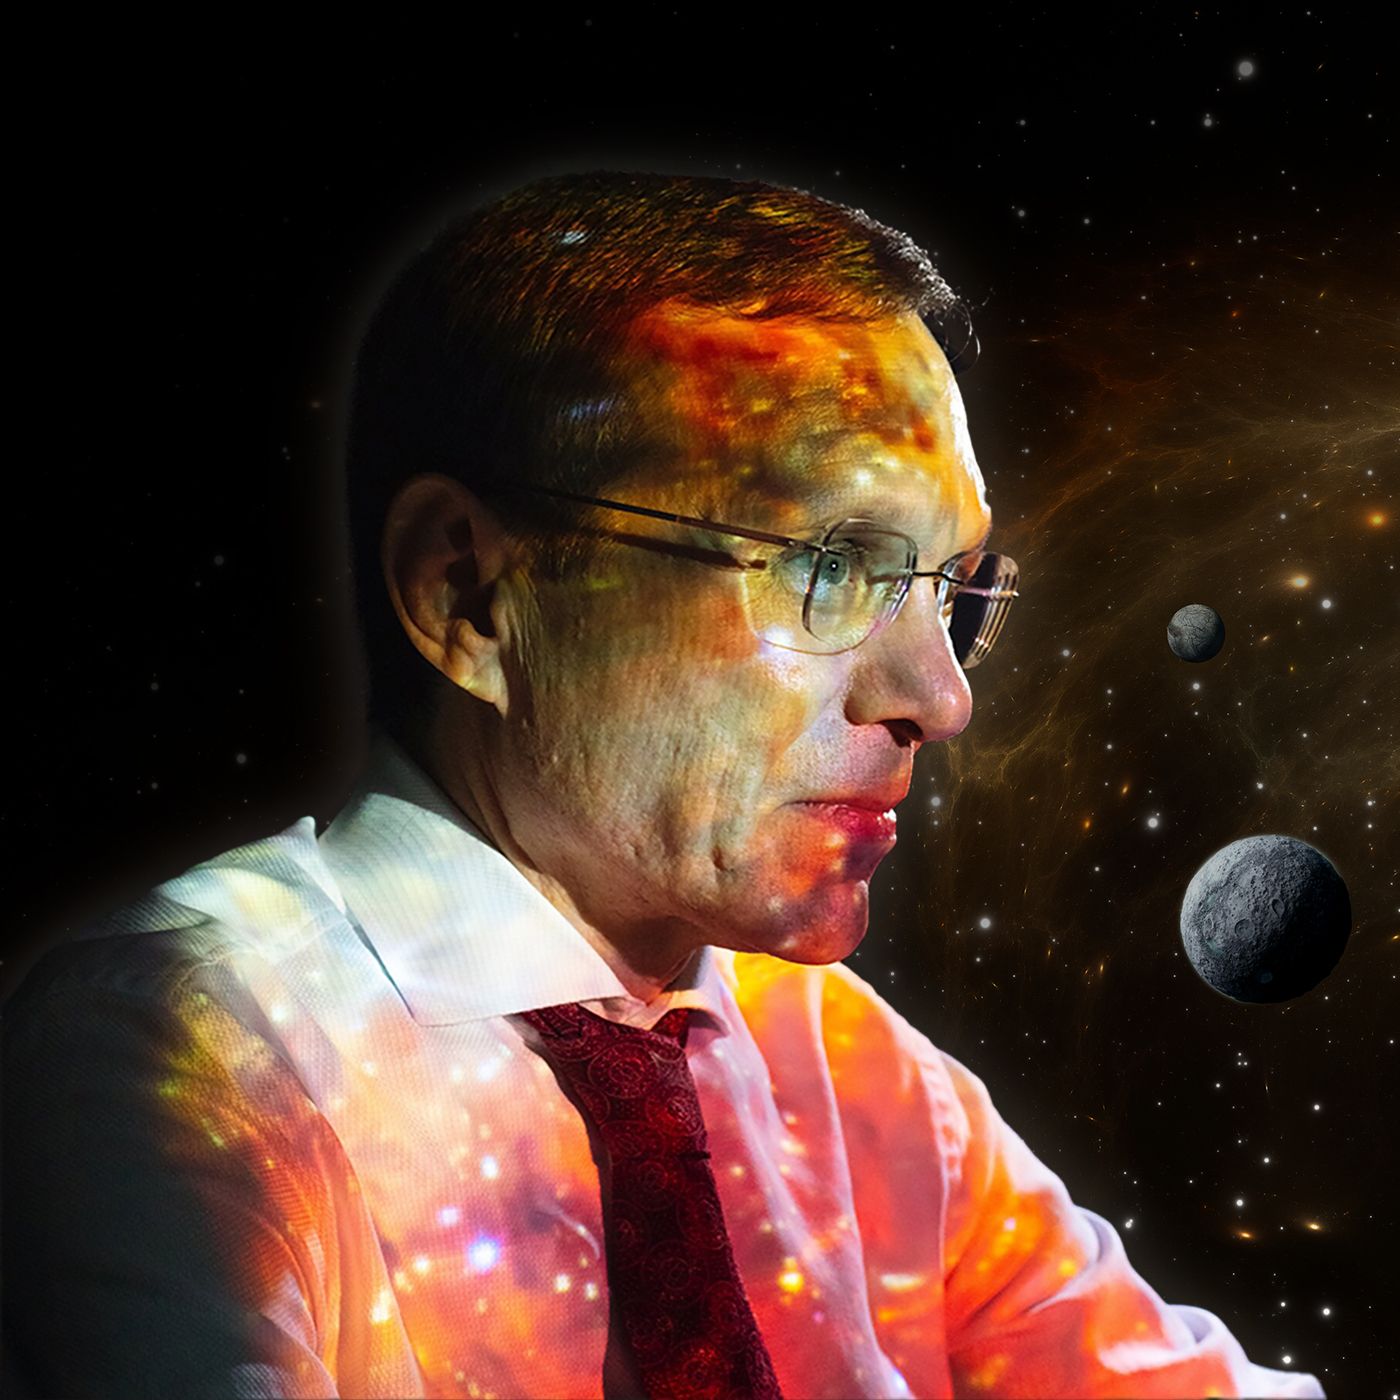 187: The Quest for ET - Harvard Astronomer Avi Loeb Returns Again